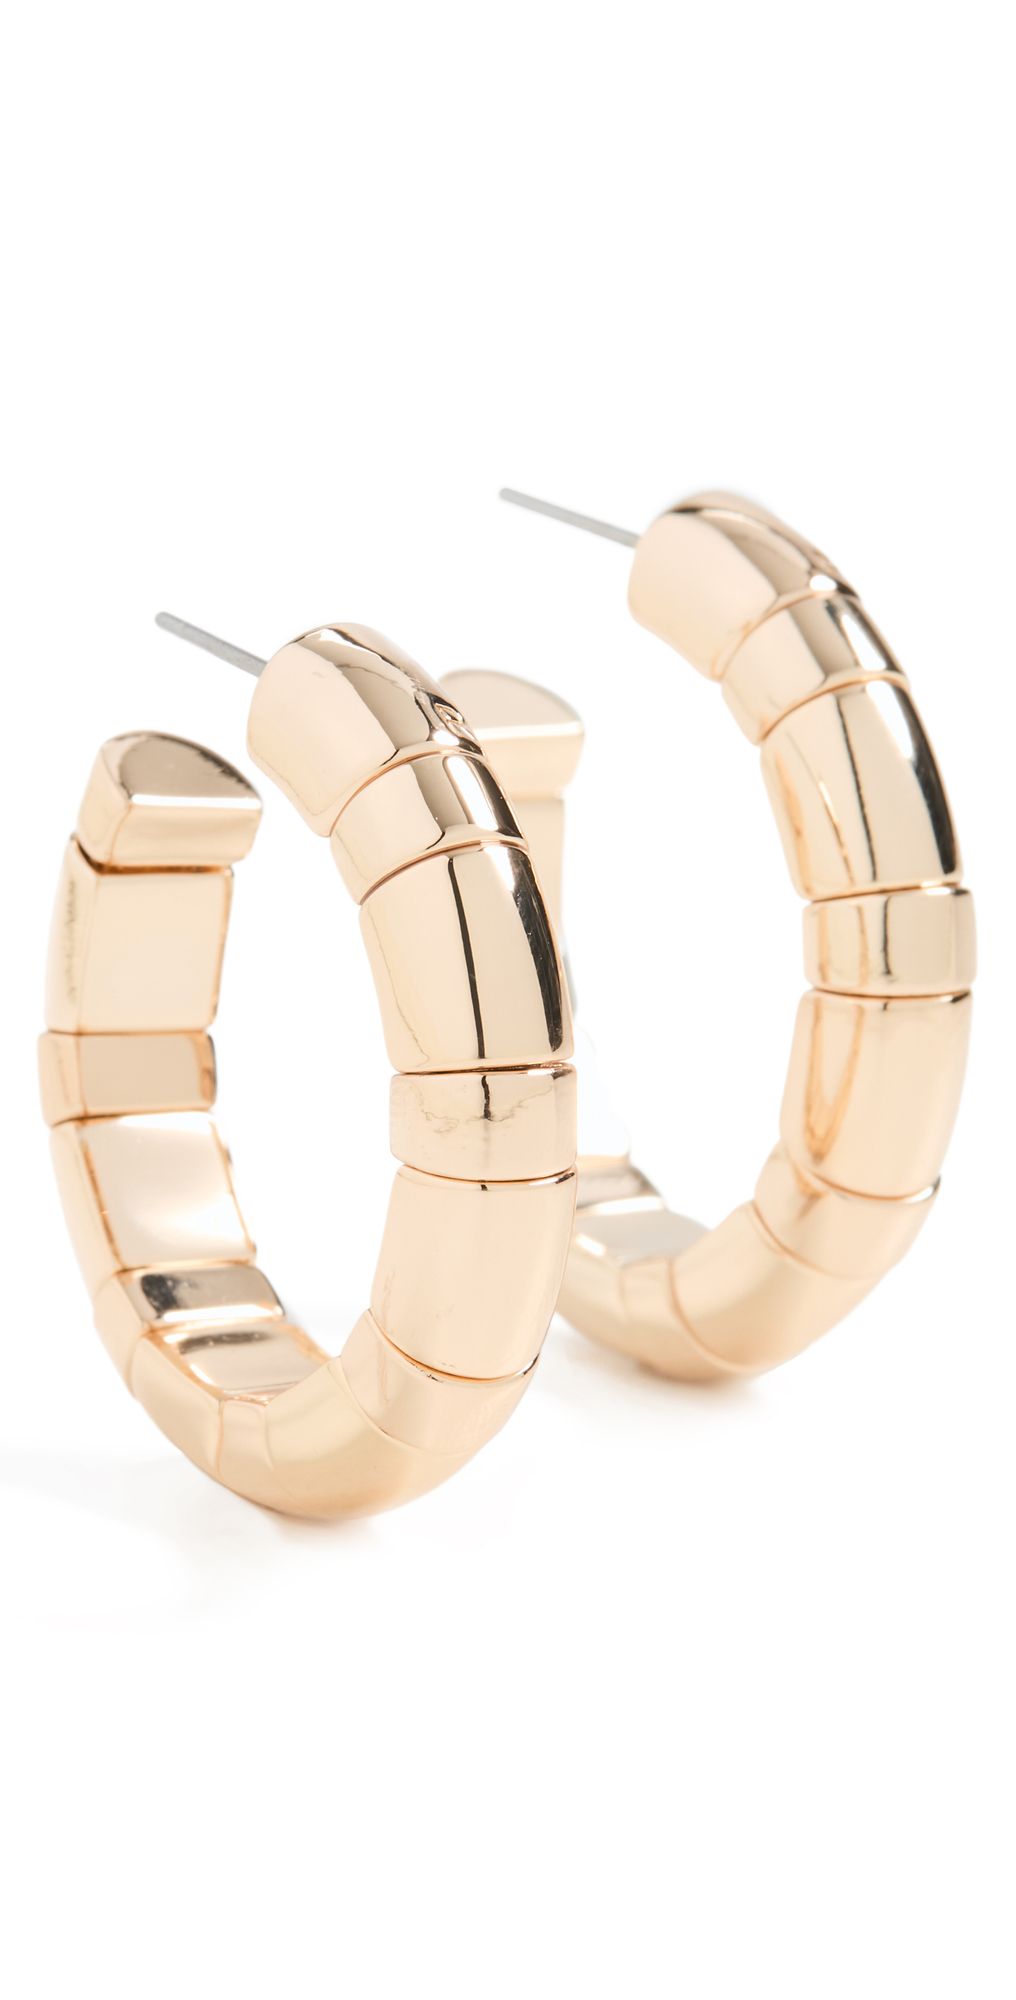 Gold Rush Chubbie Earrings | Shopbop